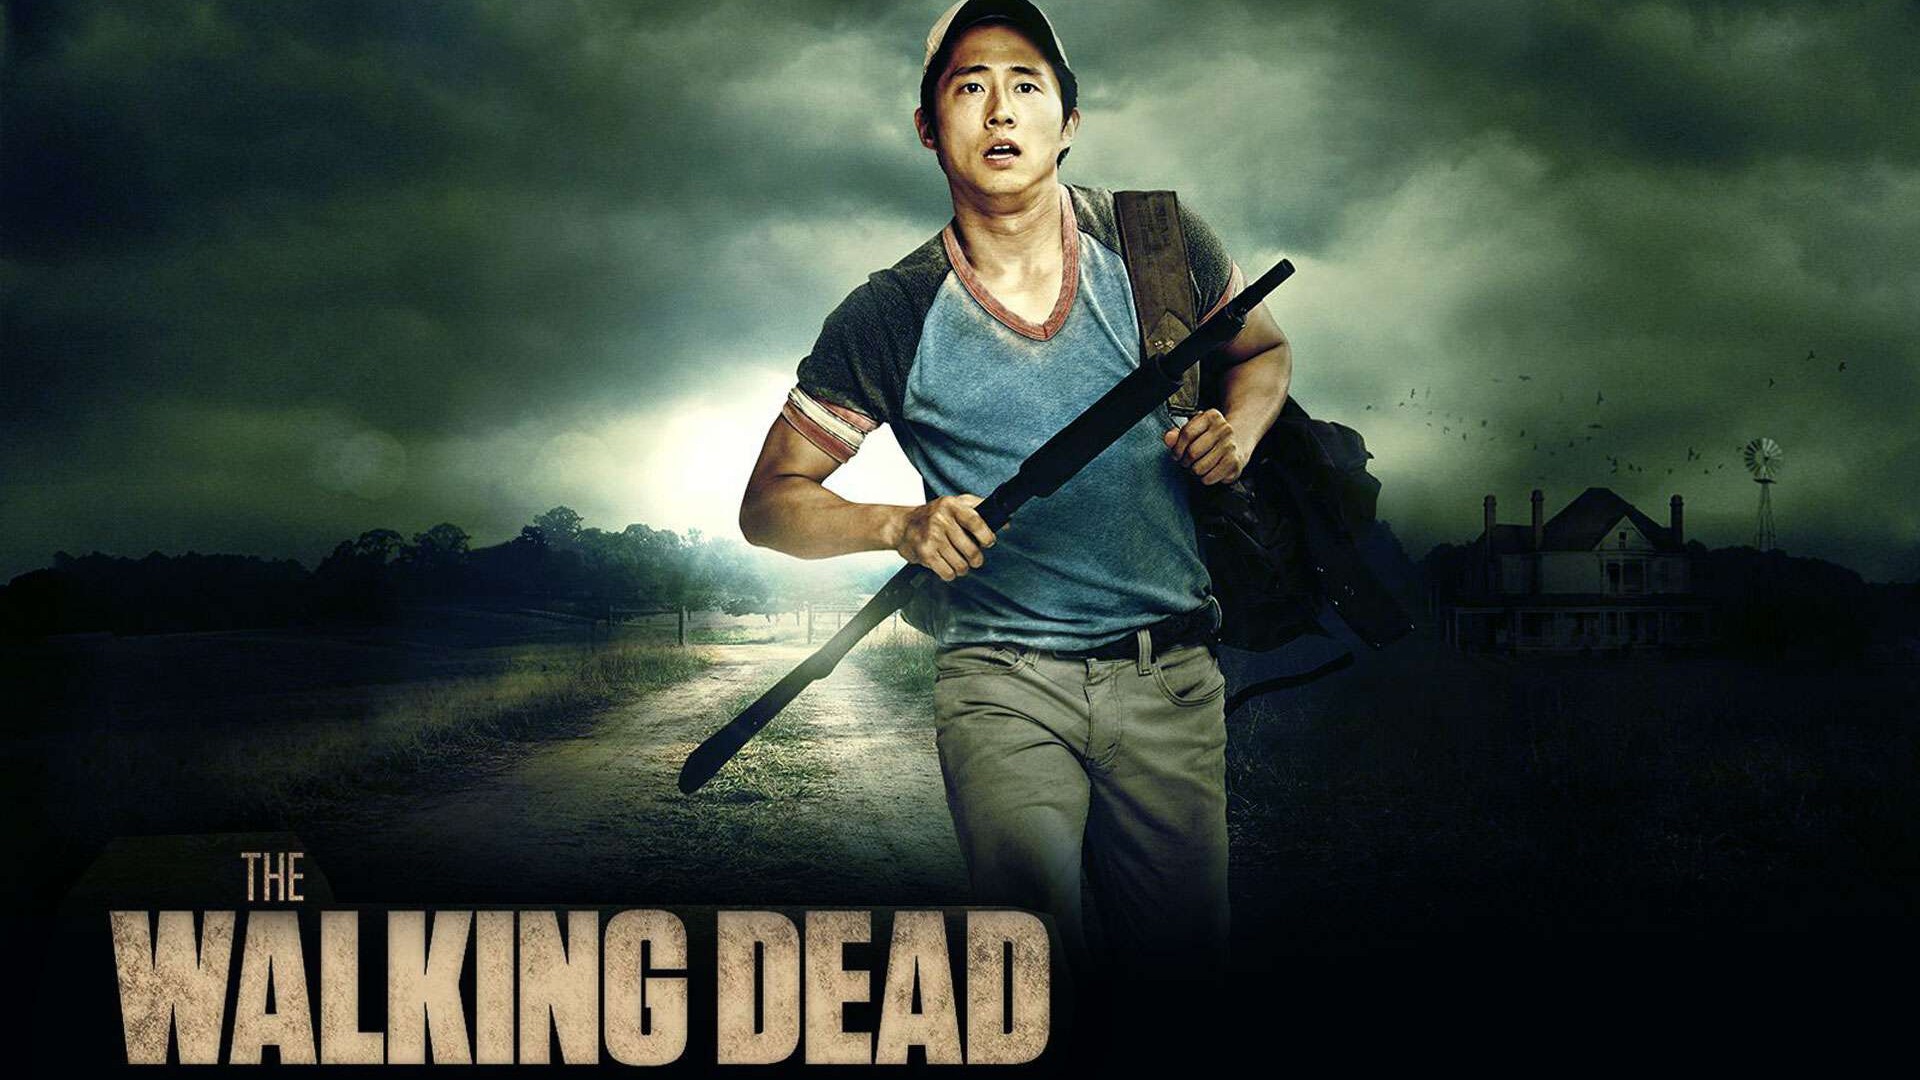 The Walking Dead HD wallpapers - 1920x1080 Wallpaper Download